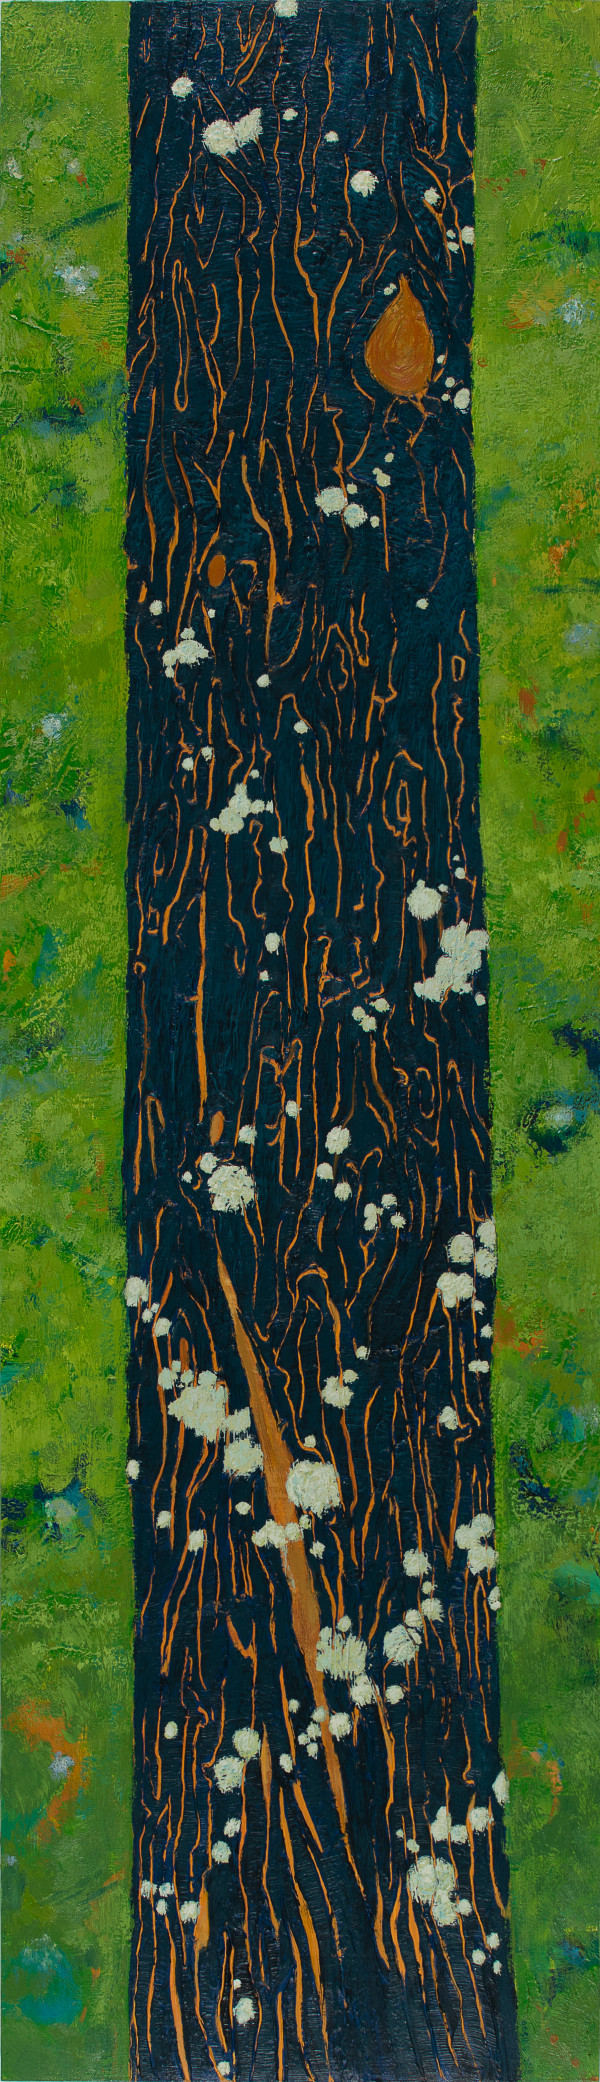 White Lichen by Katherine Steichen Rosing